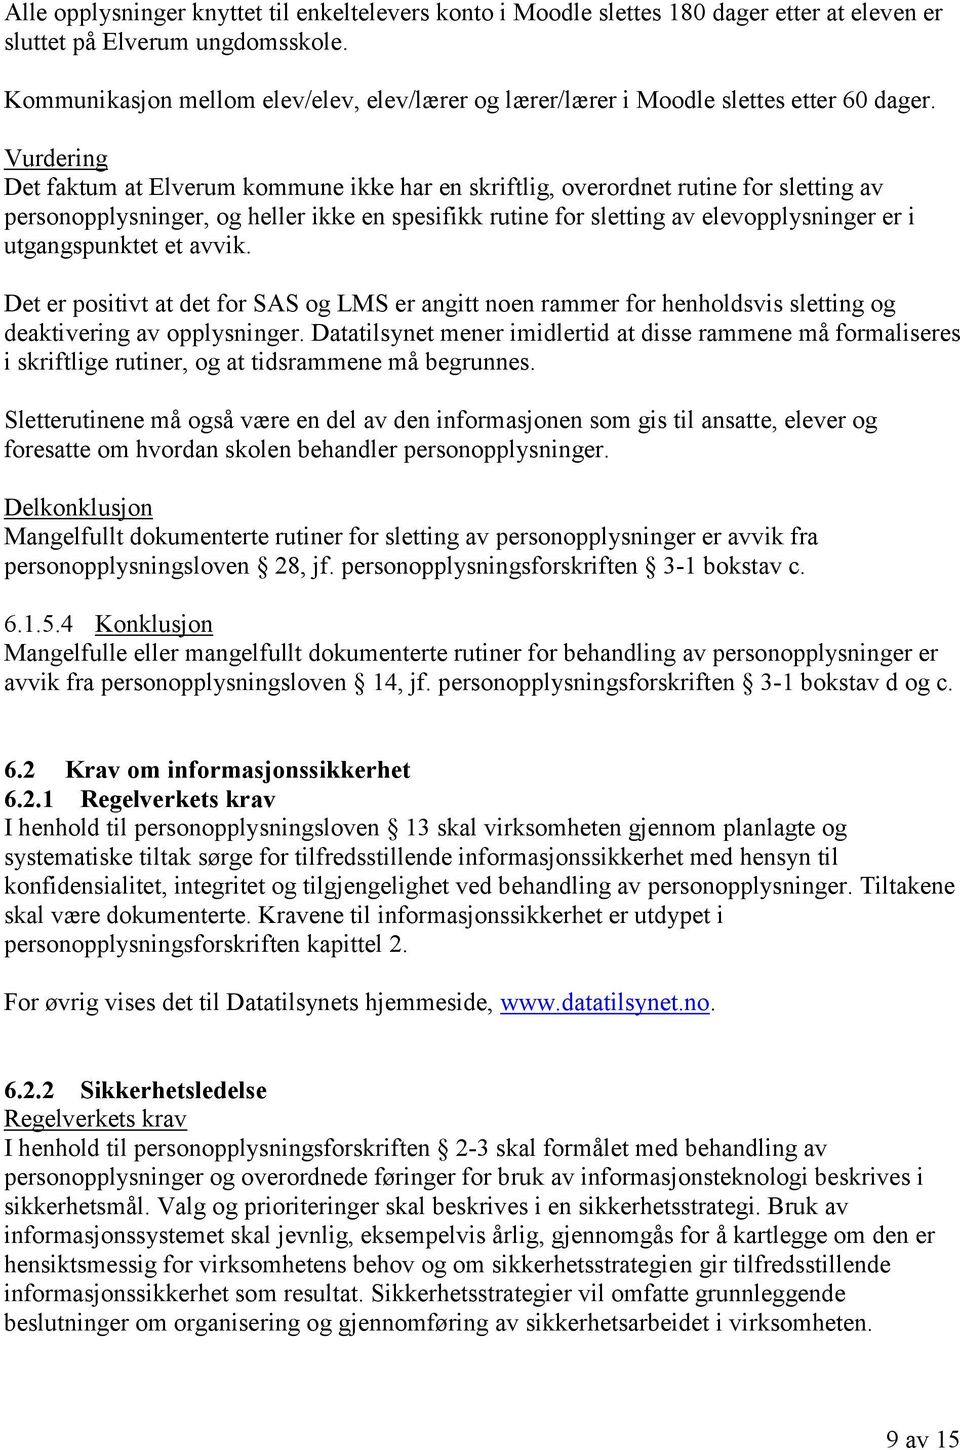 Det faktum at Elverum kommune ikke har en skriftlig, overordnet rutine for sletting av personopplysninger, og heller ikke en spesifikk rutine for sletting av elevopplysninger er i utgangspunktet et